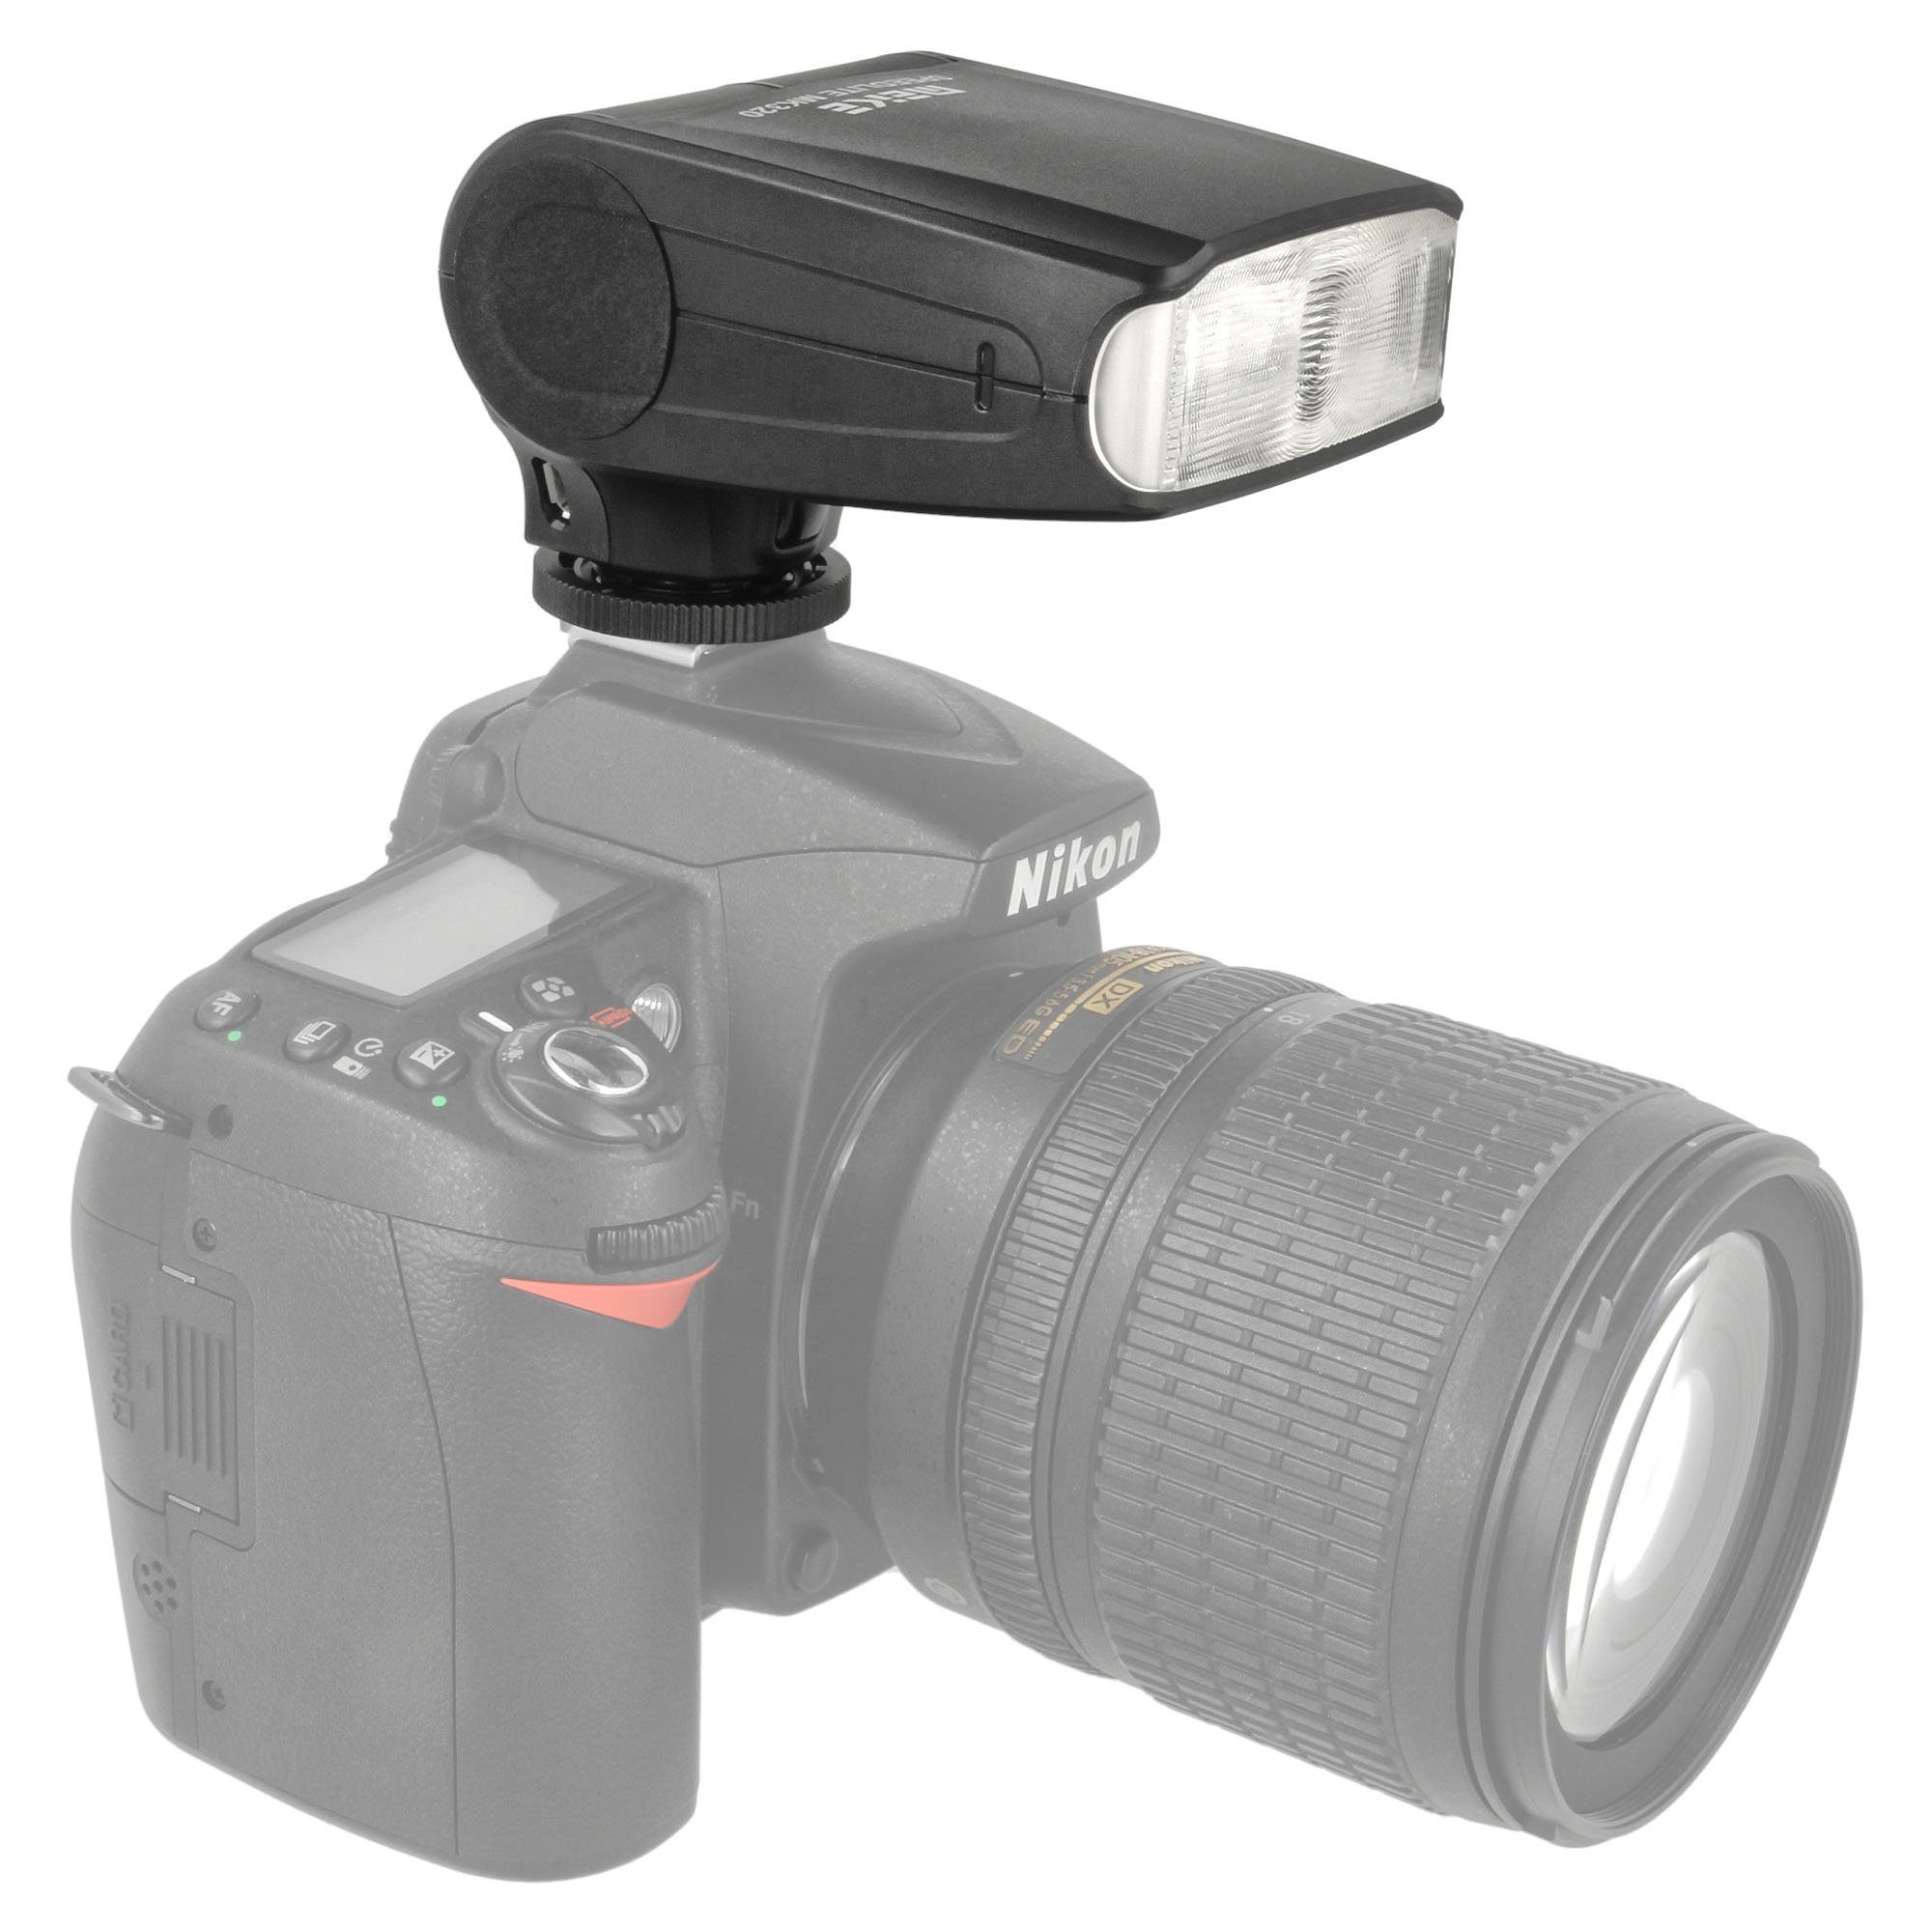 Meike Meike Speedlite MK-320N TTL-Blitzgerät, Aufsteckblitz kompatibel mit  Nikon Kameras mit Standard-Mittenkontakt Blitzanschluss inkl.  Aufsteckdiffusor Blitzgerät